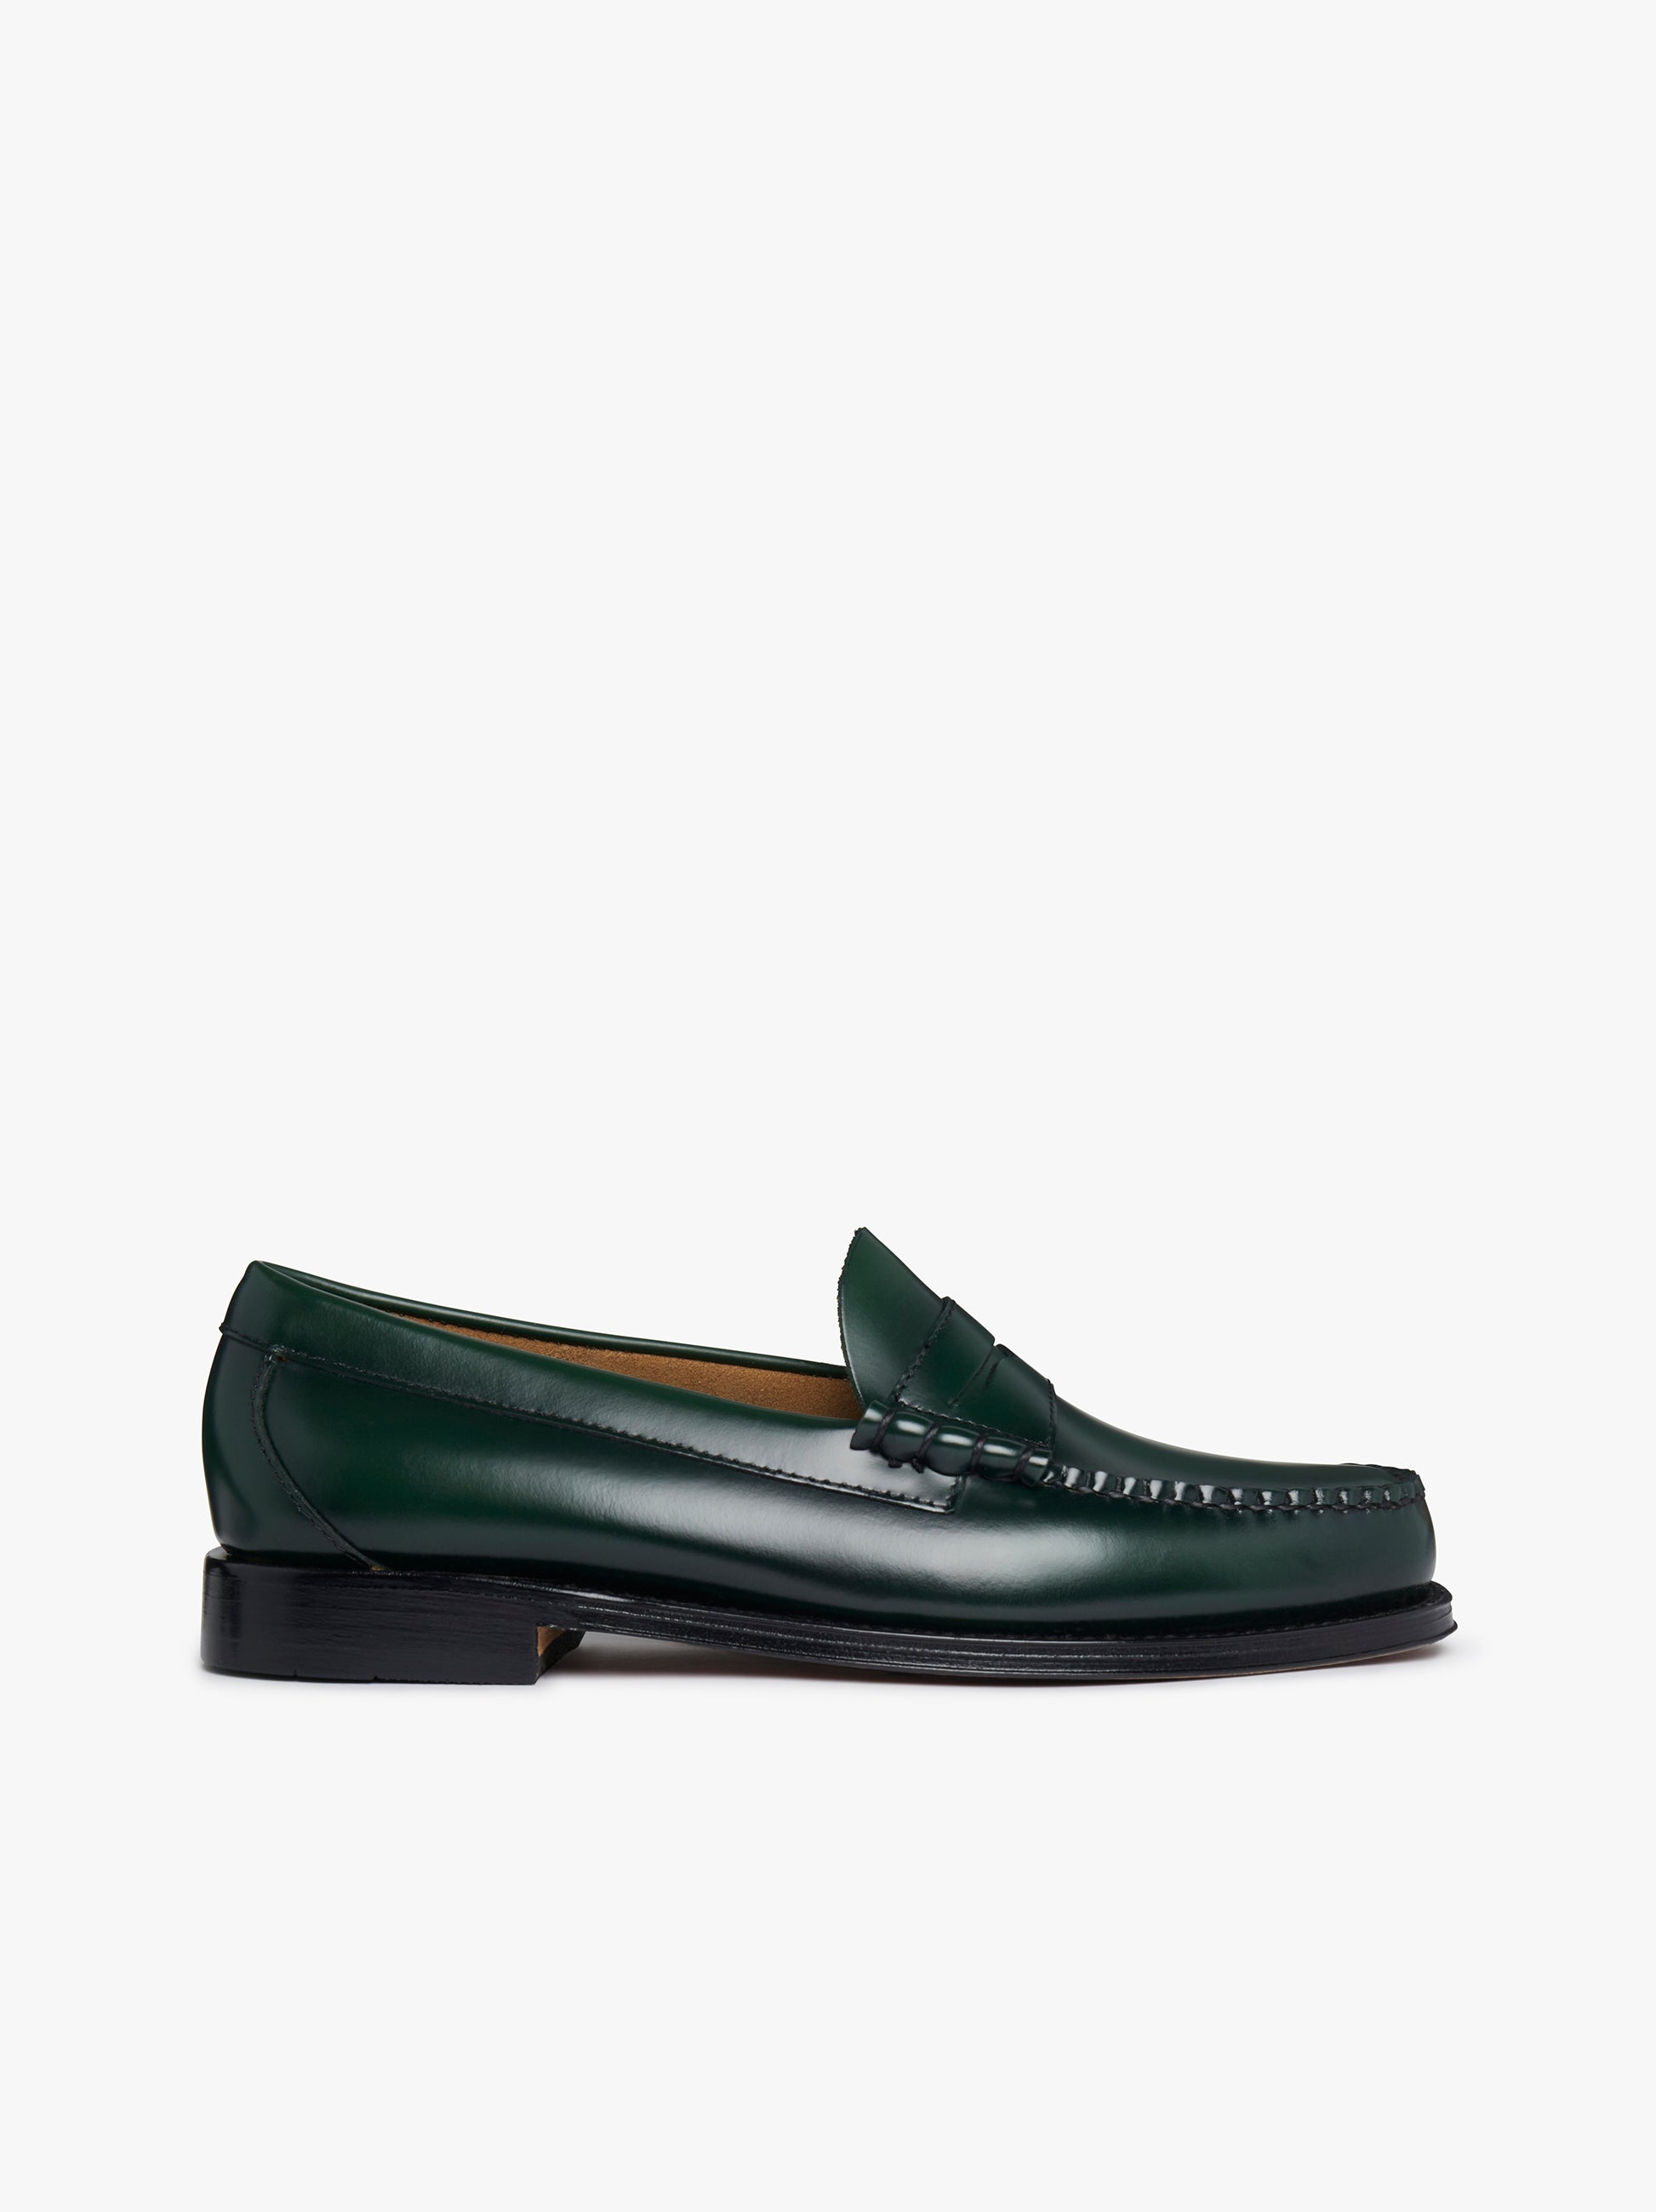 Mens Green Leather Loafers | Green Leather Loafers â€“ G.H.BASS – G.H ...